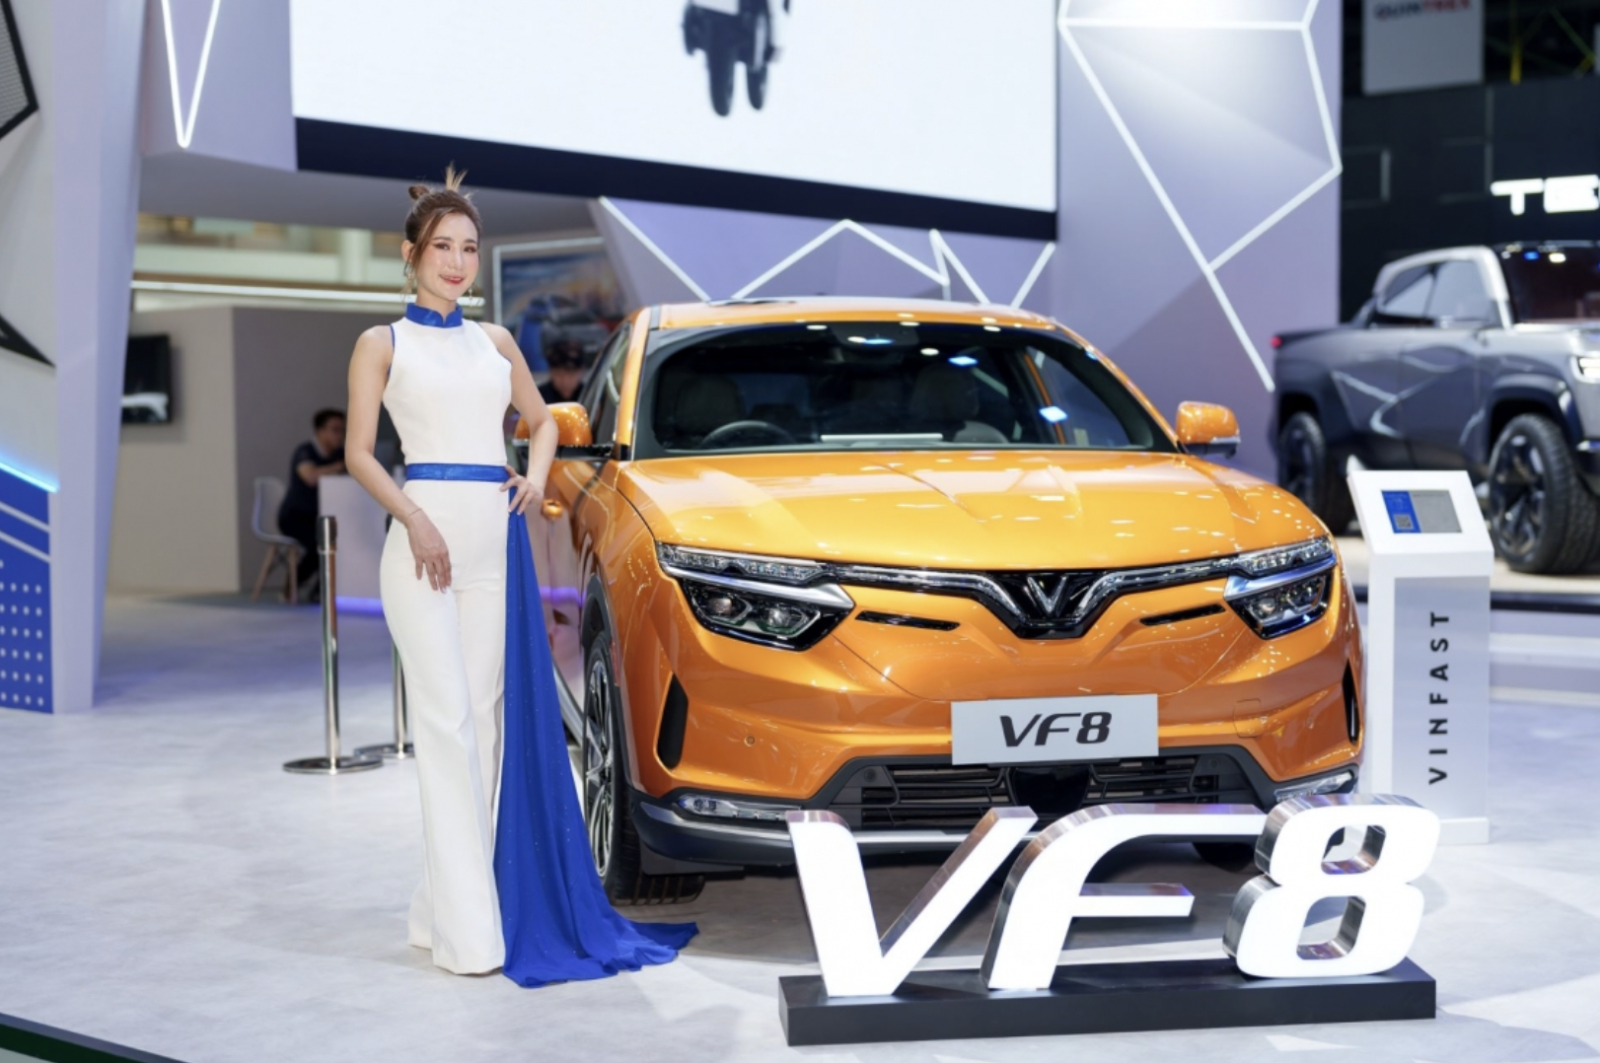 Mẫu D-SUV VF8 từng được trưng bày tại rất nhiều triển lãm ô tô quốc tế lớn trên thế giới